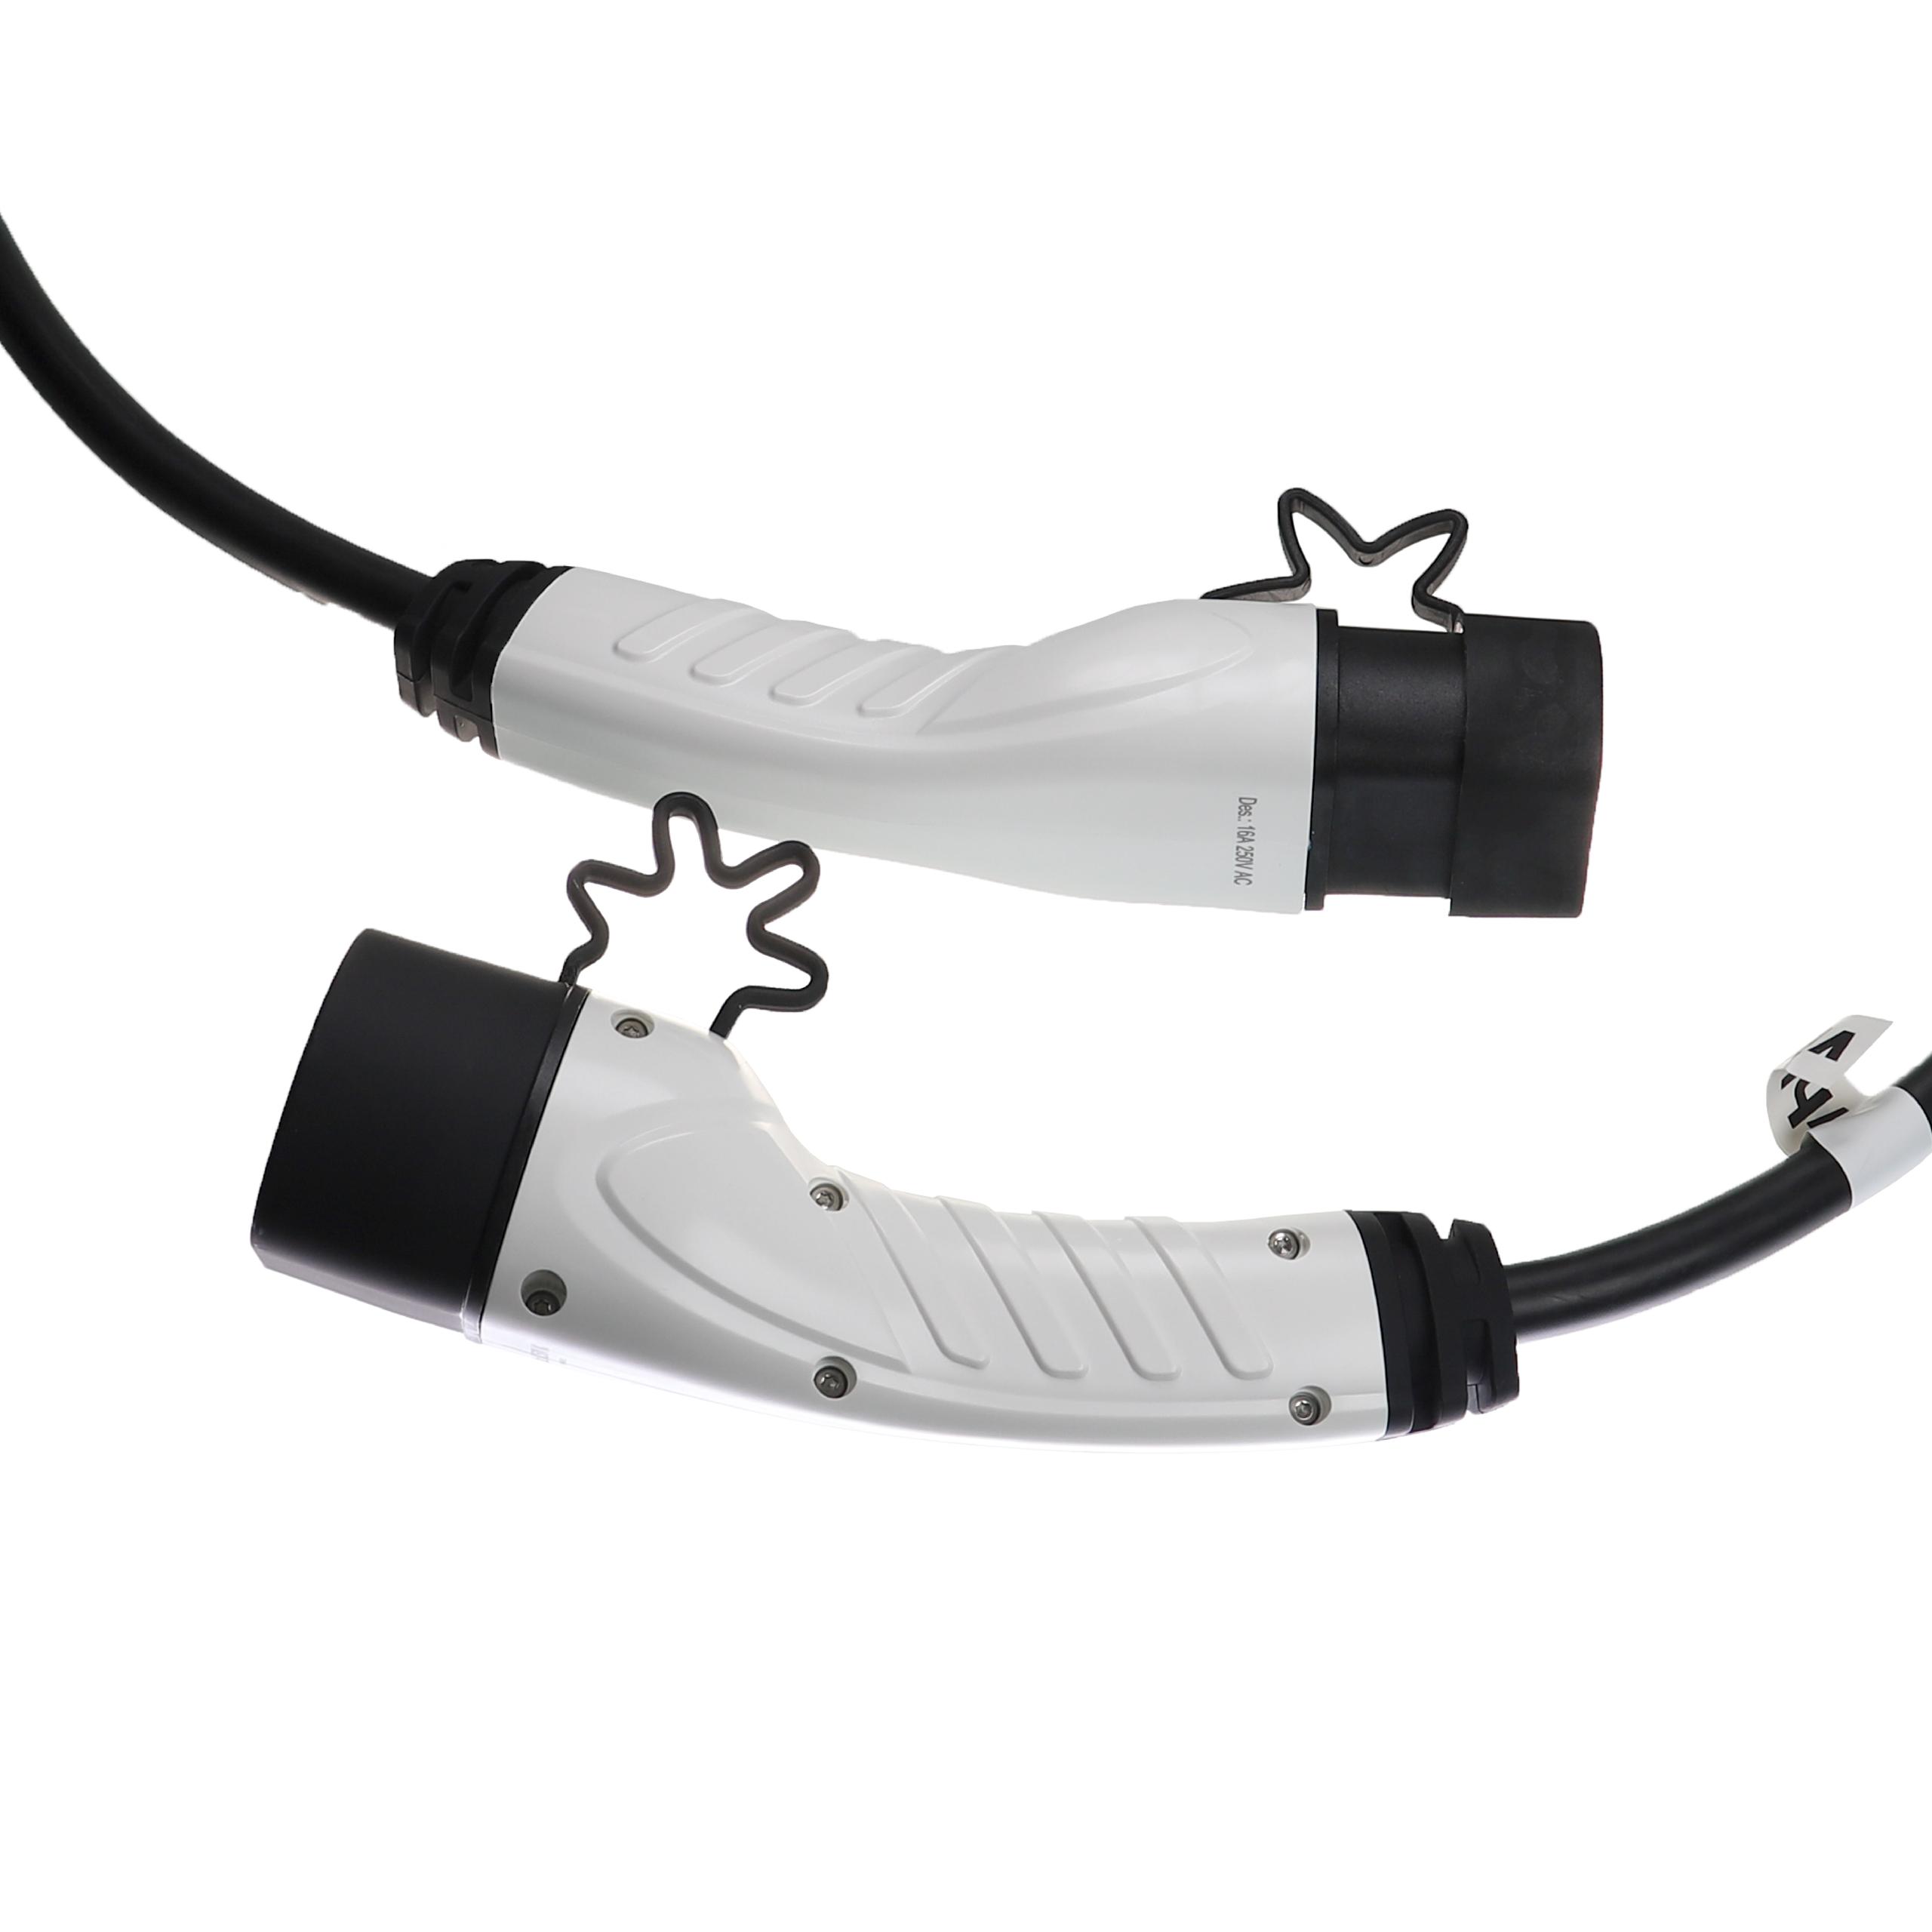 Kabel do ładowania samochodu elektrycznego - typ 2 do typ 2, 1-fazowy, 16 A, 3,5 kW, 10 m